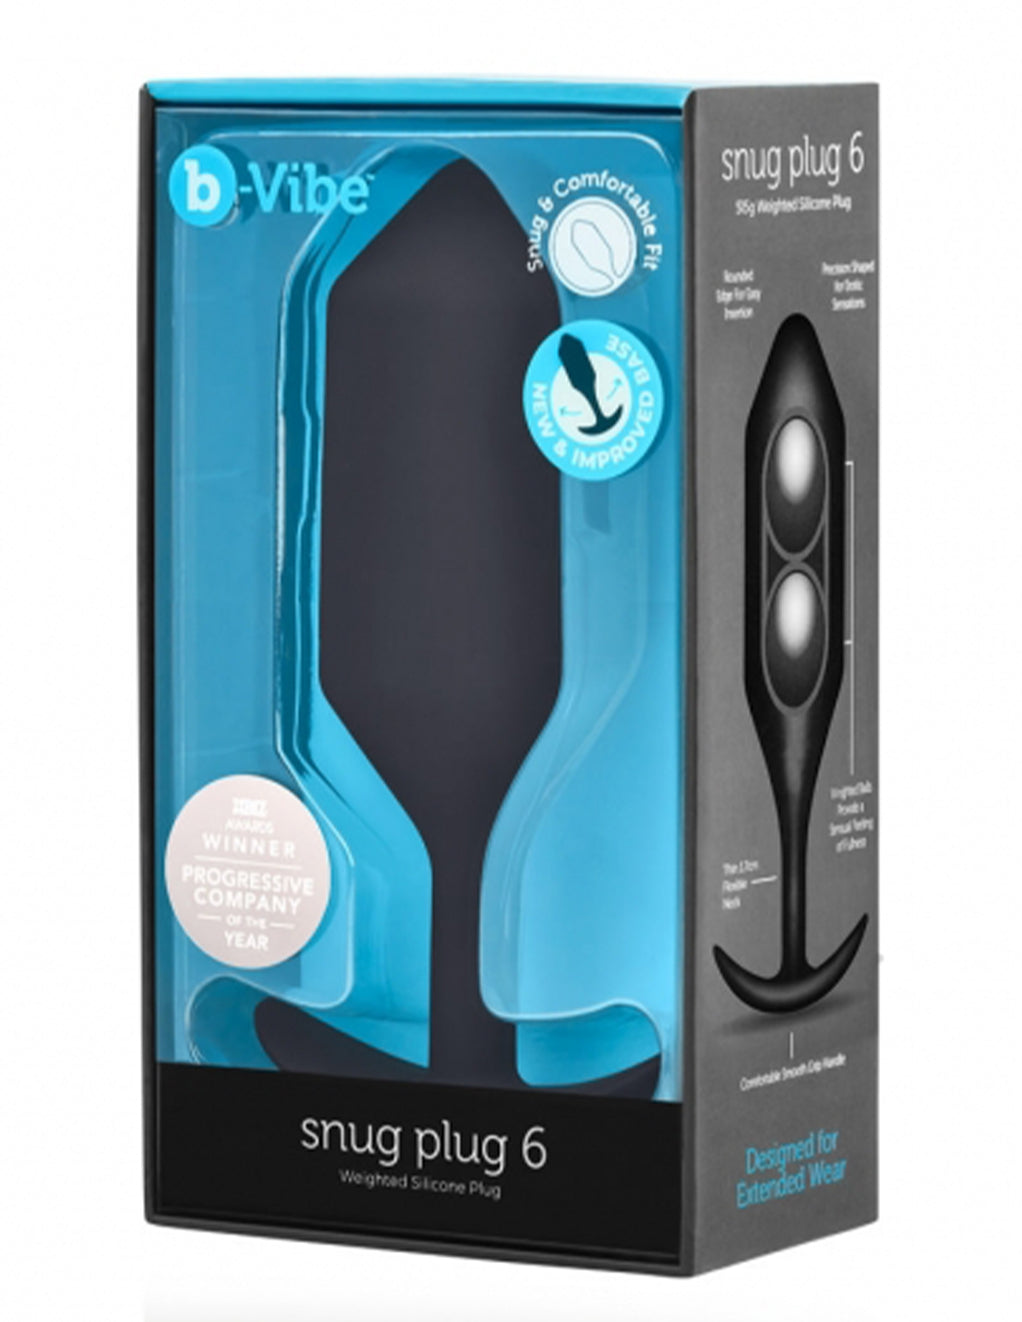 B-Vibe Snug Plug 6- Package